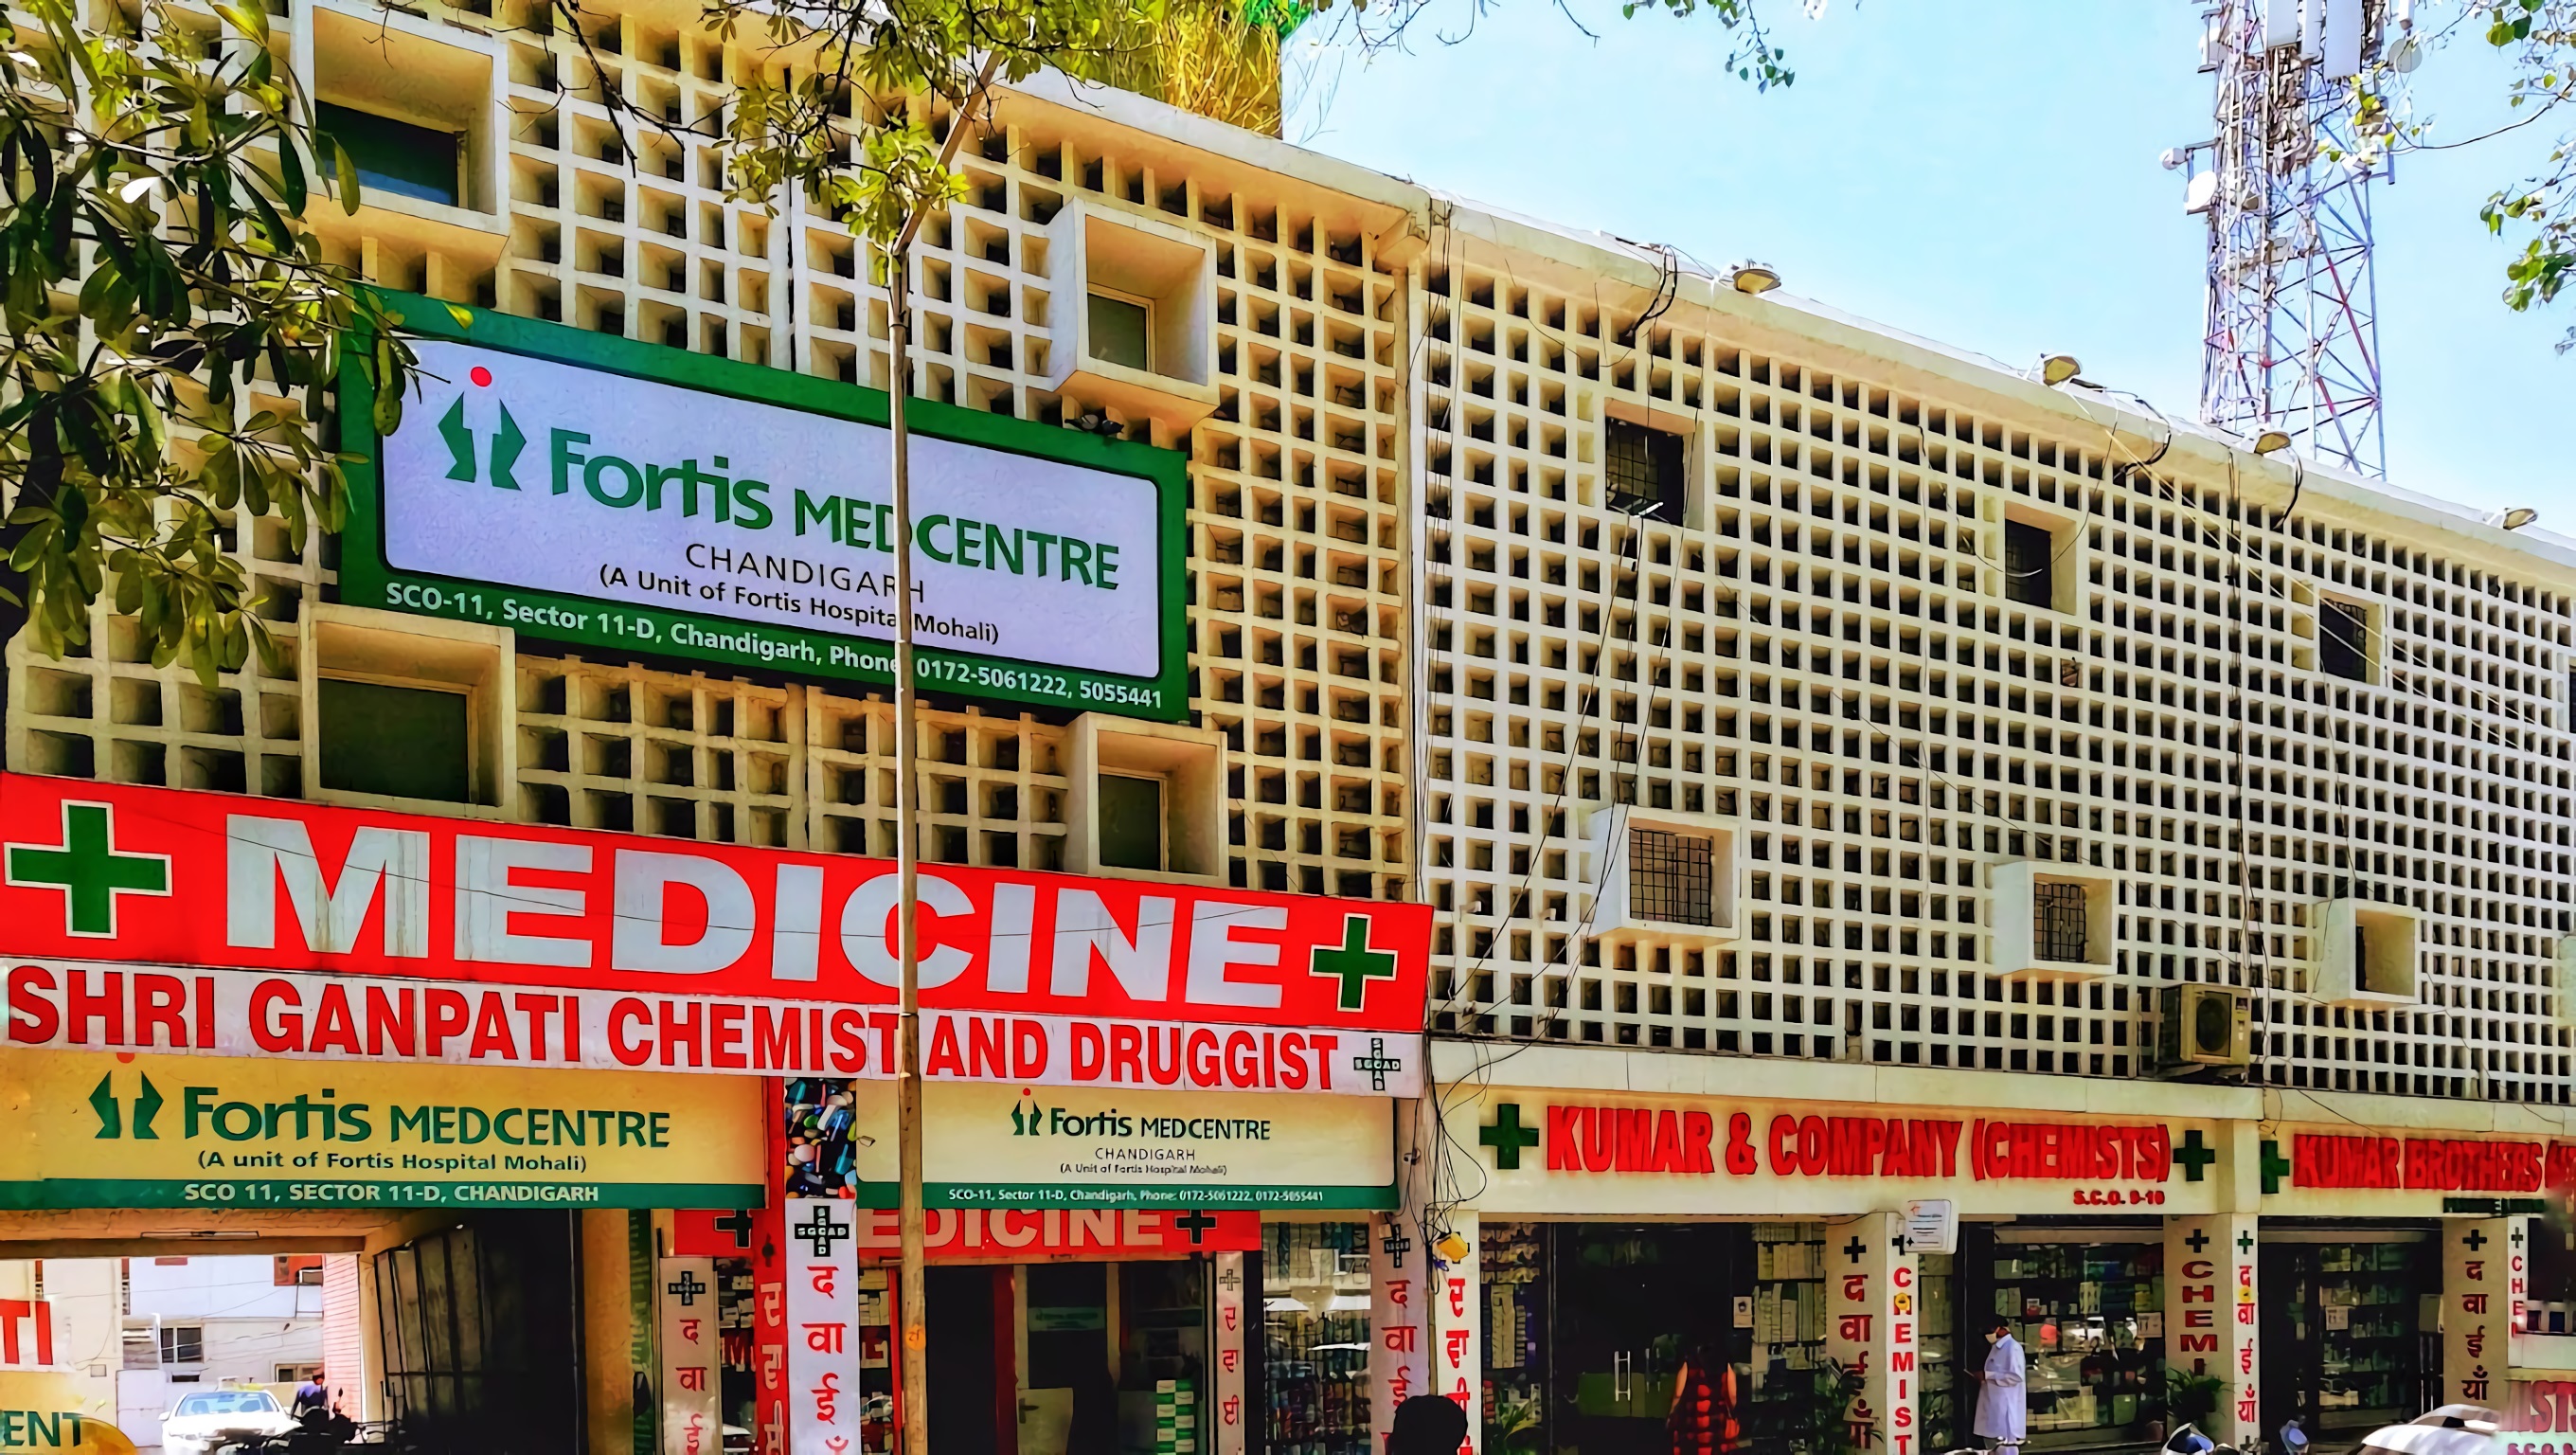 Fortis Medcentre Hospital